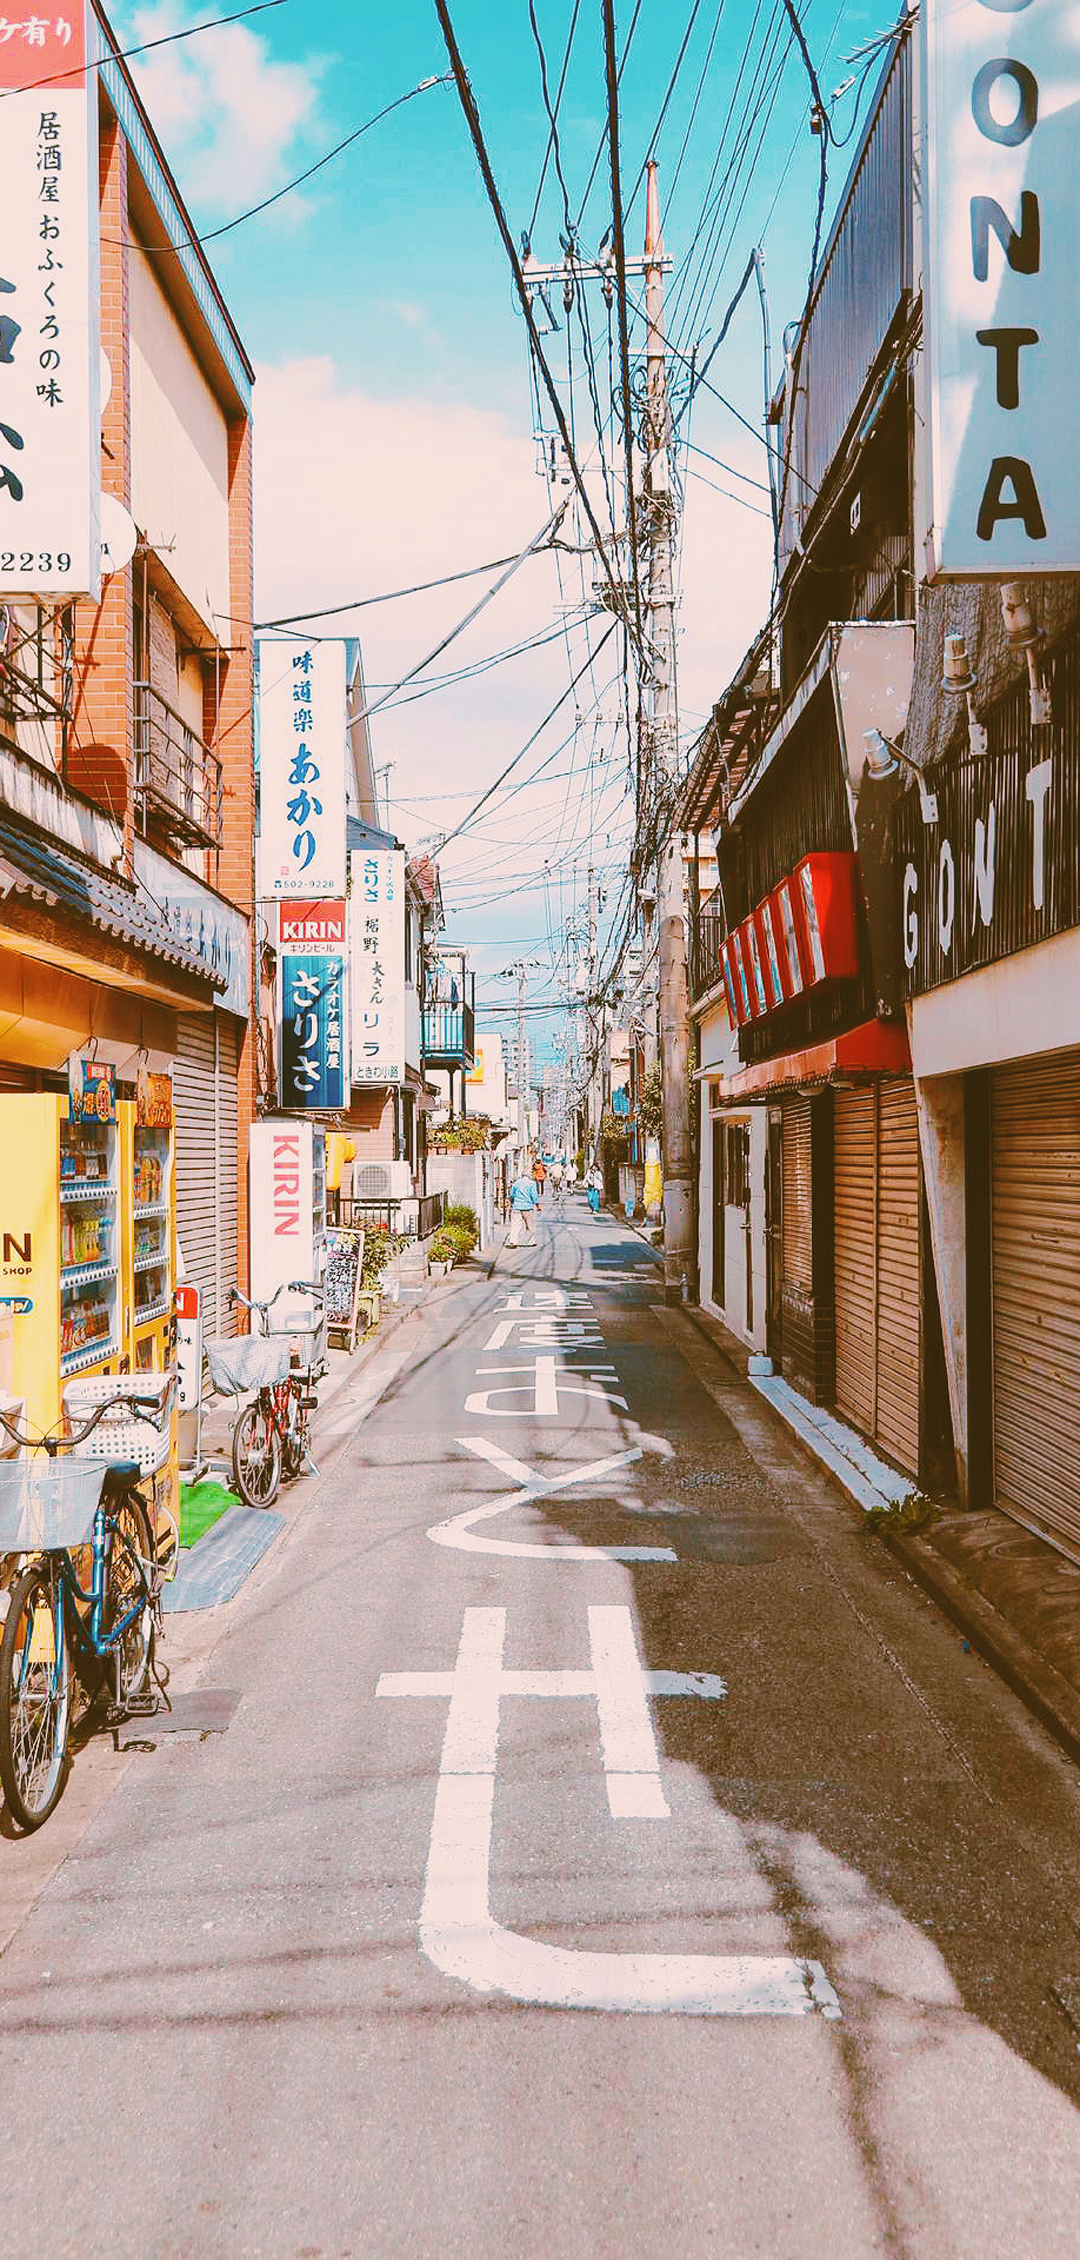 日本街道景拍